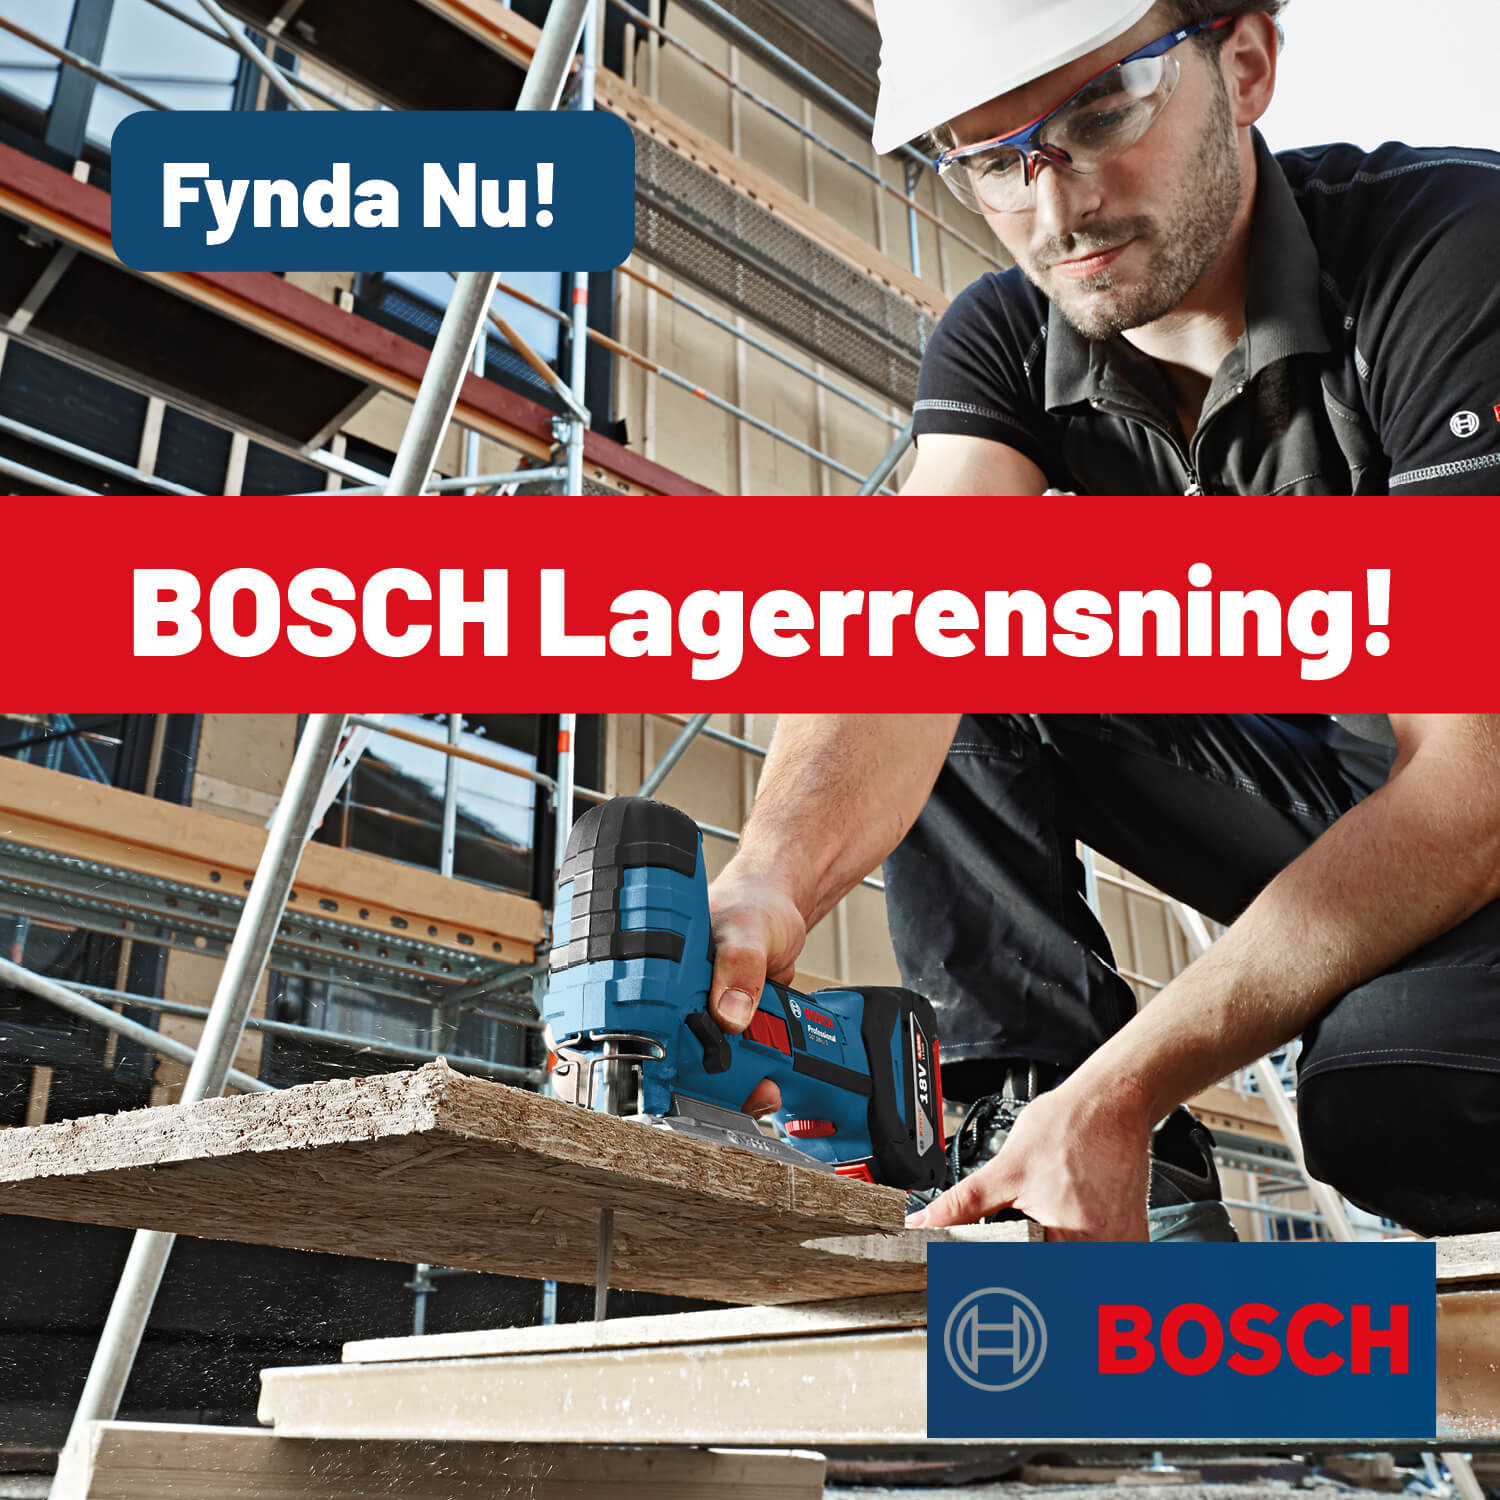 Bosch lagerrensning